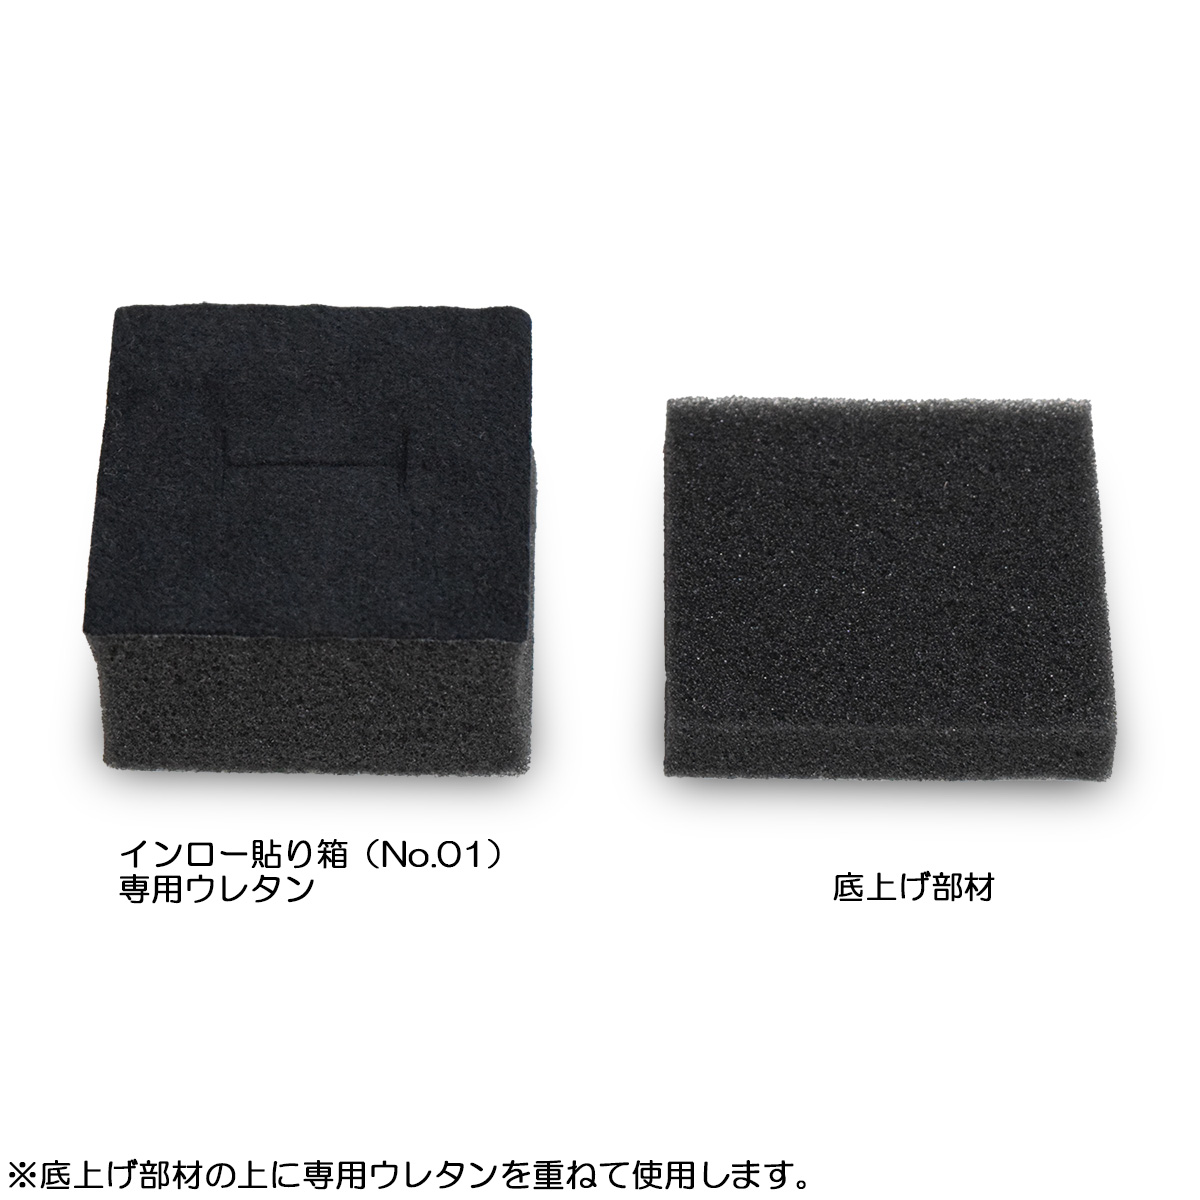 ふるさと割ふるさと割インロー貼り箱（No.01）用 ウレタン (49×49×30) 10個セット ギフトラッピング用品